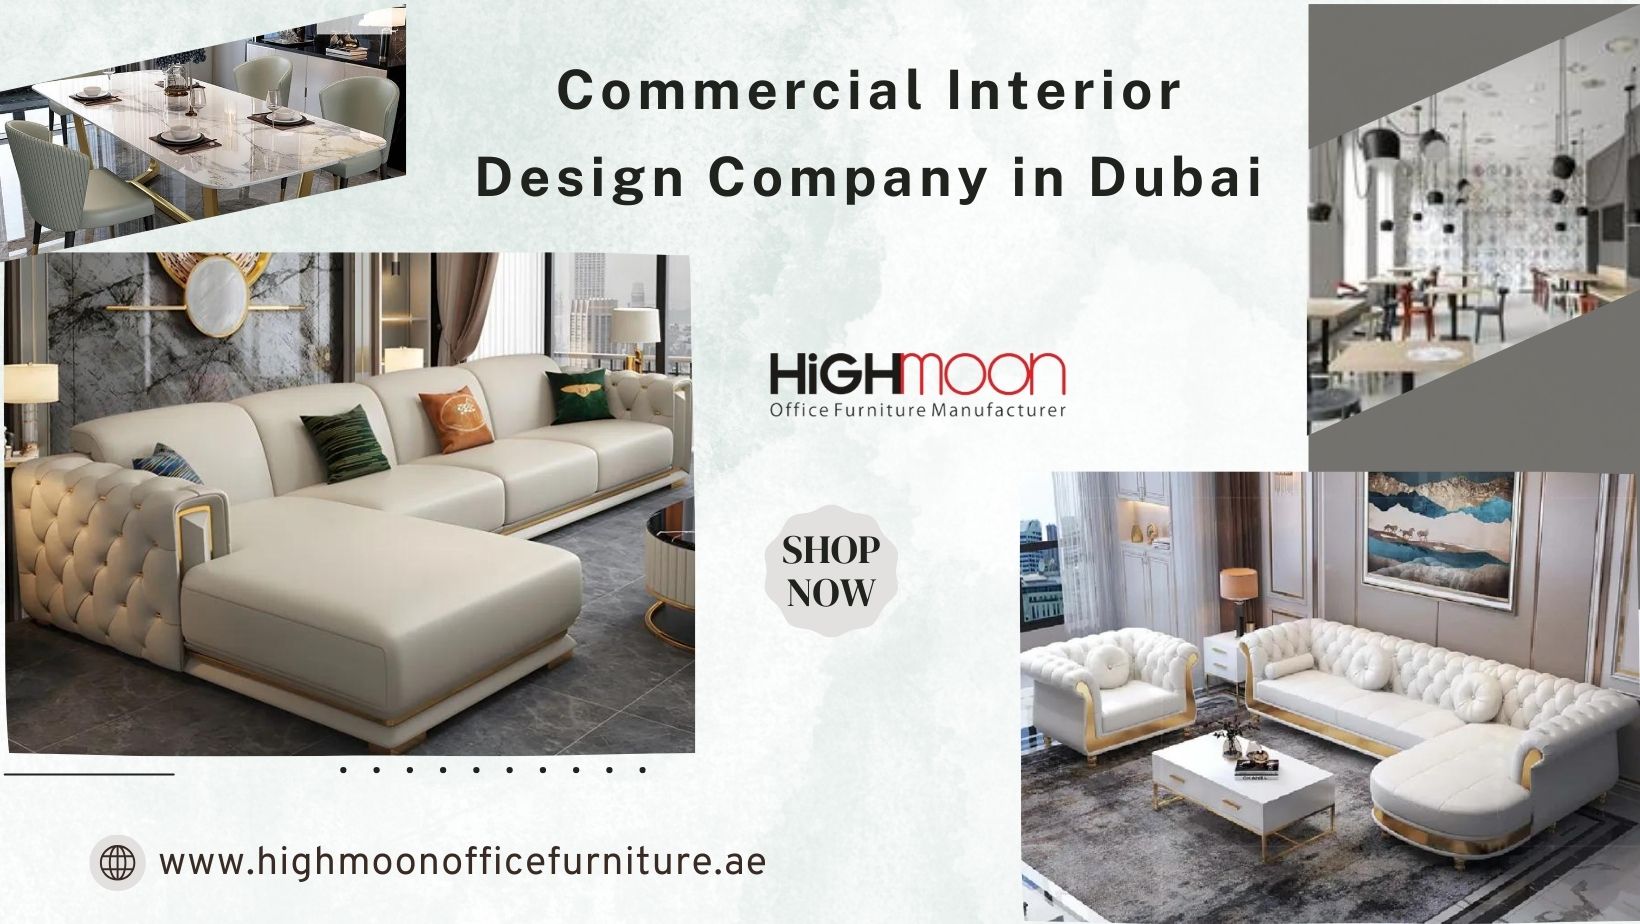 Commercial Interior Design Company in Dubai